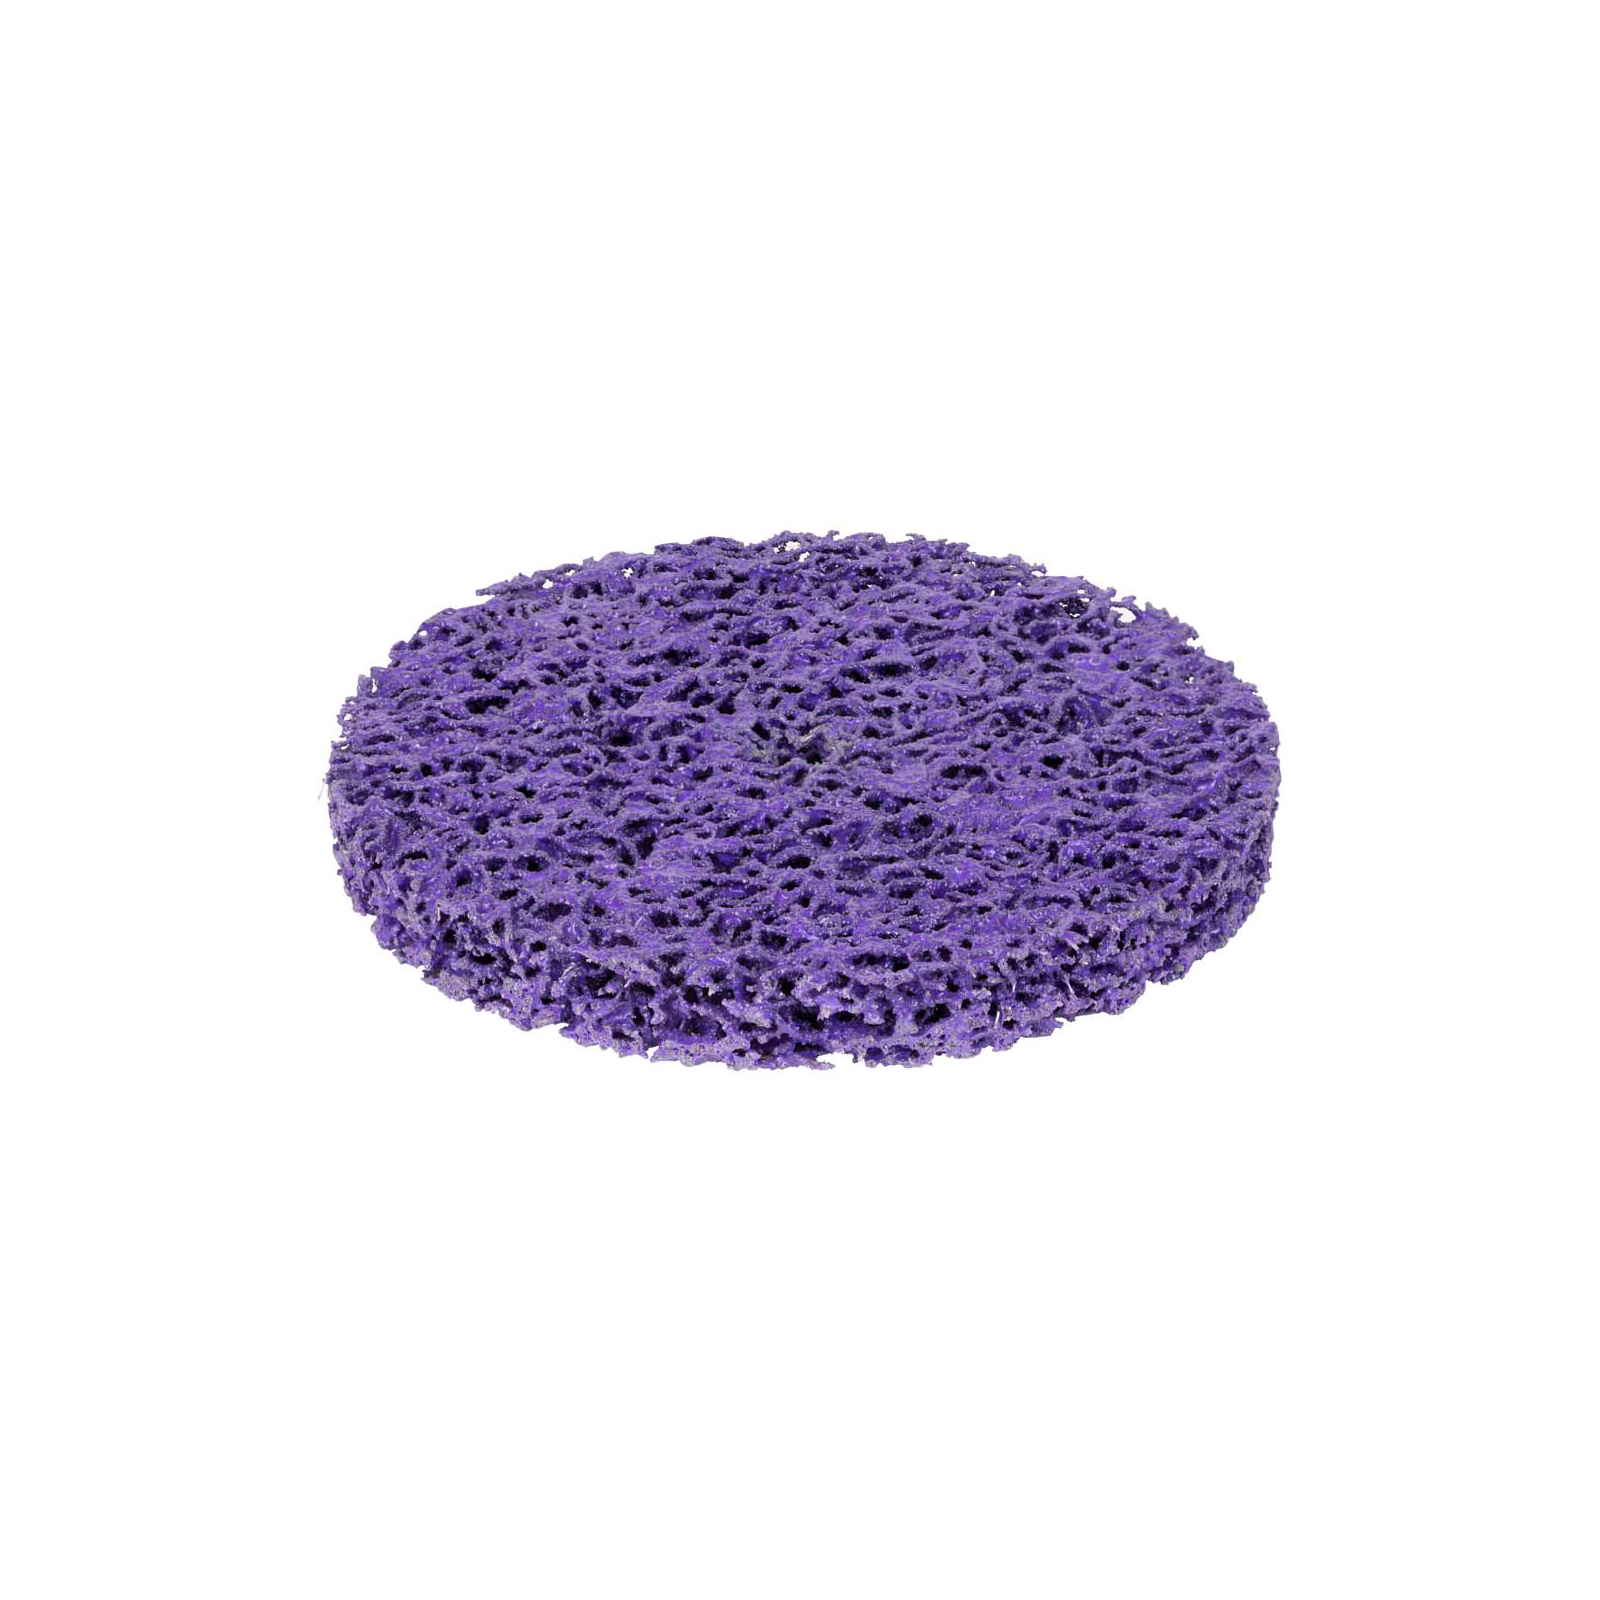 Круг зачистний Sigma з нетканого абразиву (корал) 125мм без тримача фіолетовий твердий (9175681) зображення 3